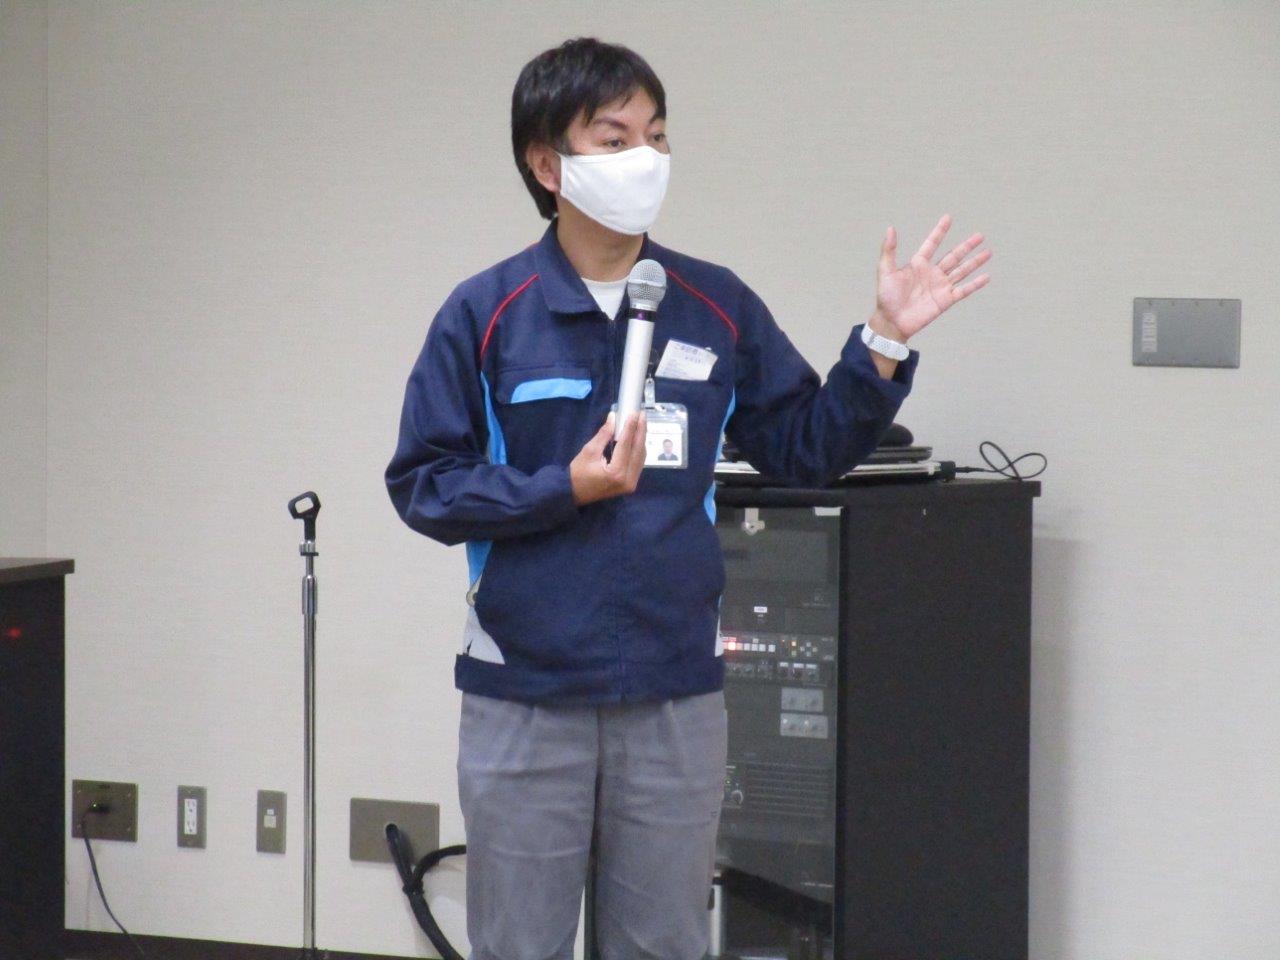 静岡県国際交流協会が主催する「留学生のための就職支援講座」で、ソミックグループの採用担当が講師を務めました